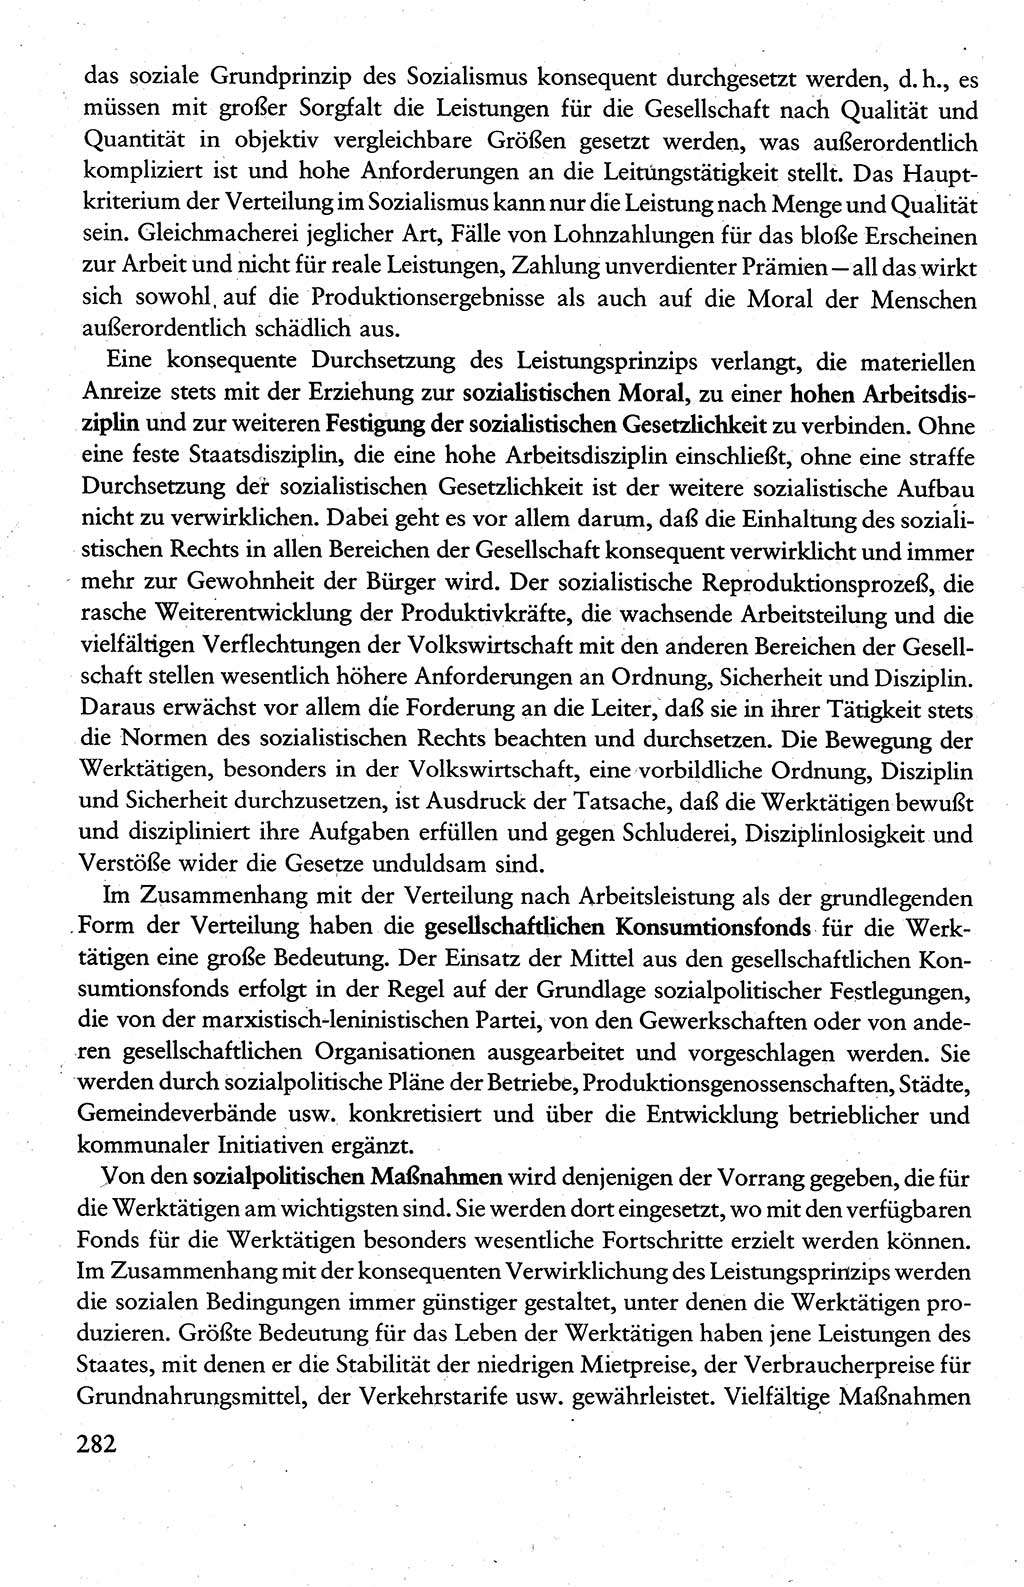 Wissenschaftlicher Kommunismus [Deutsche Demokratische Republik (DDR)], Lehrbuch für das marxistisch-leninistische Grundlagenstudium 1983, Seite 282 (Wiss. Komm. DDR Lb. 1983, S. 282)